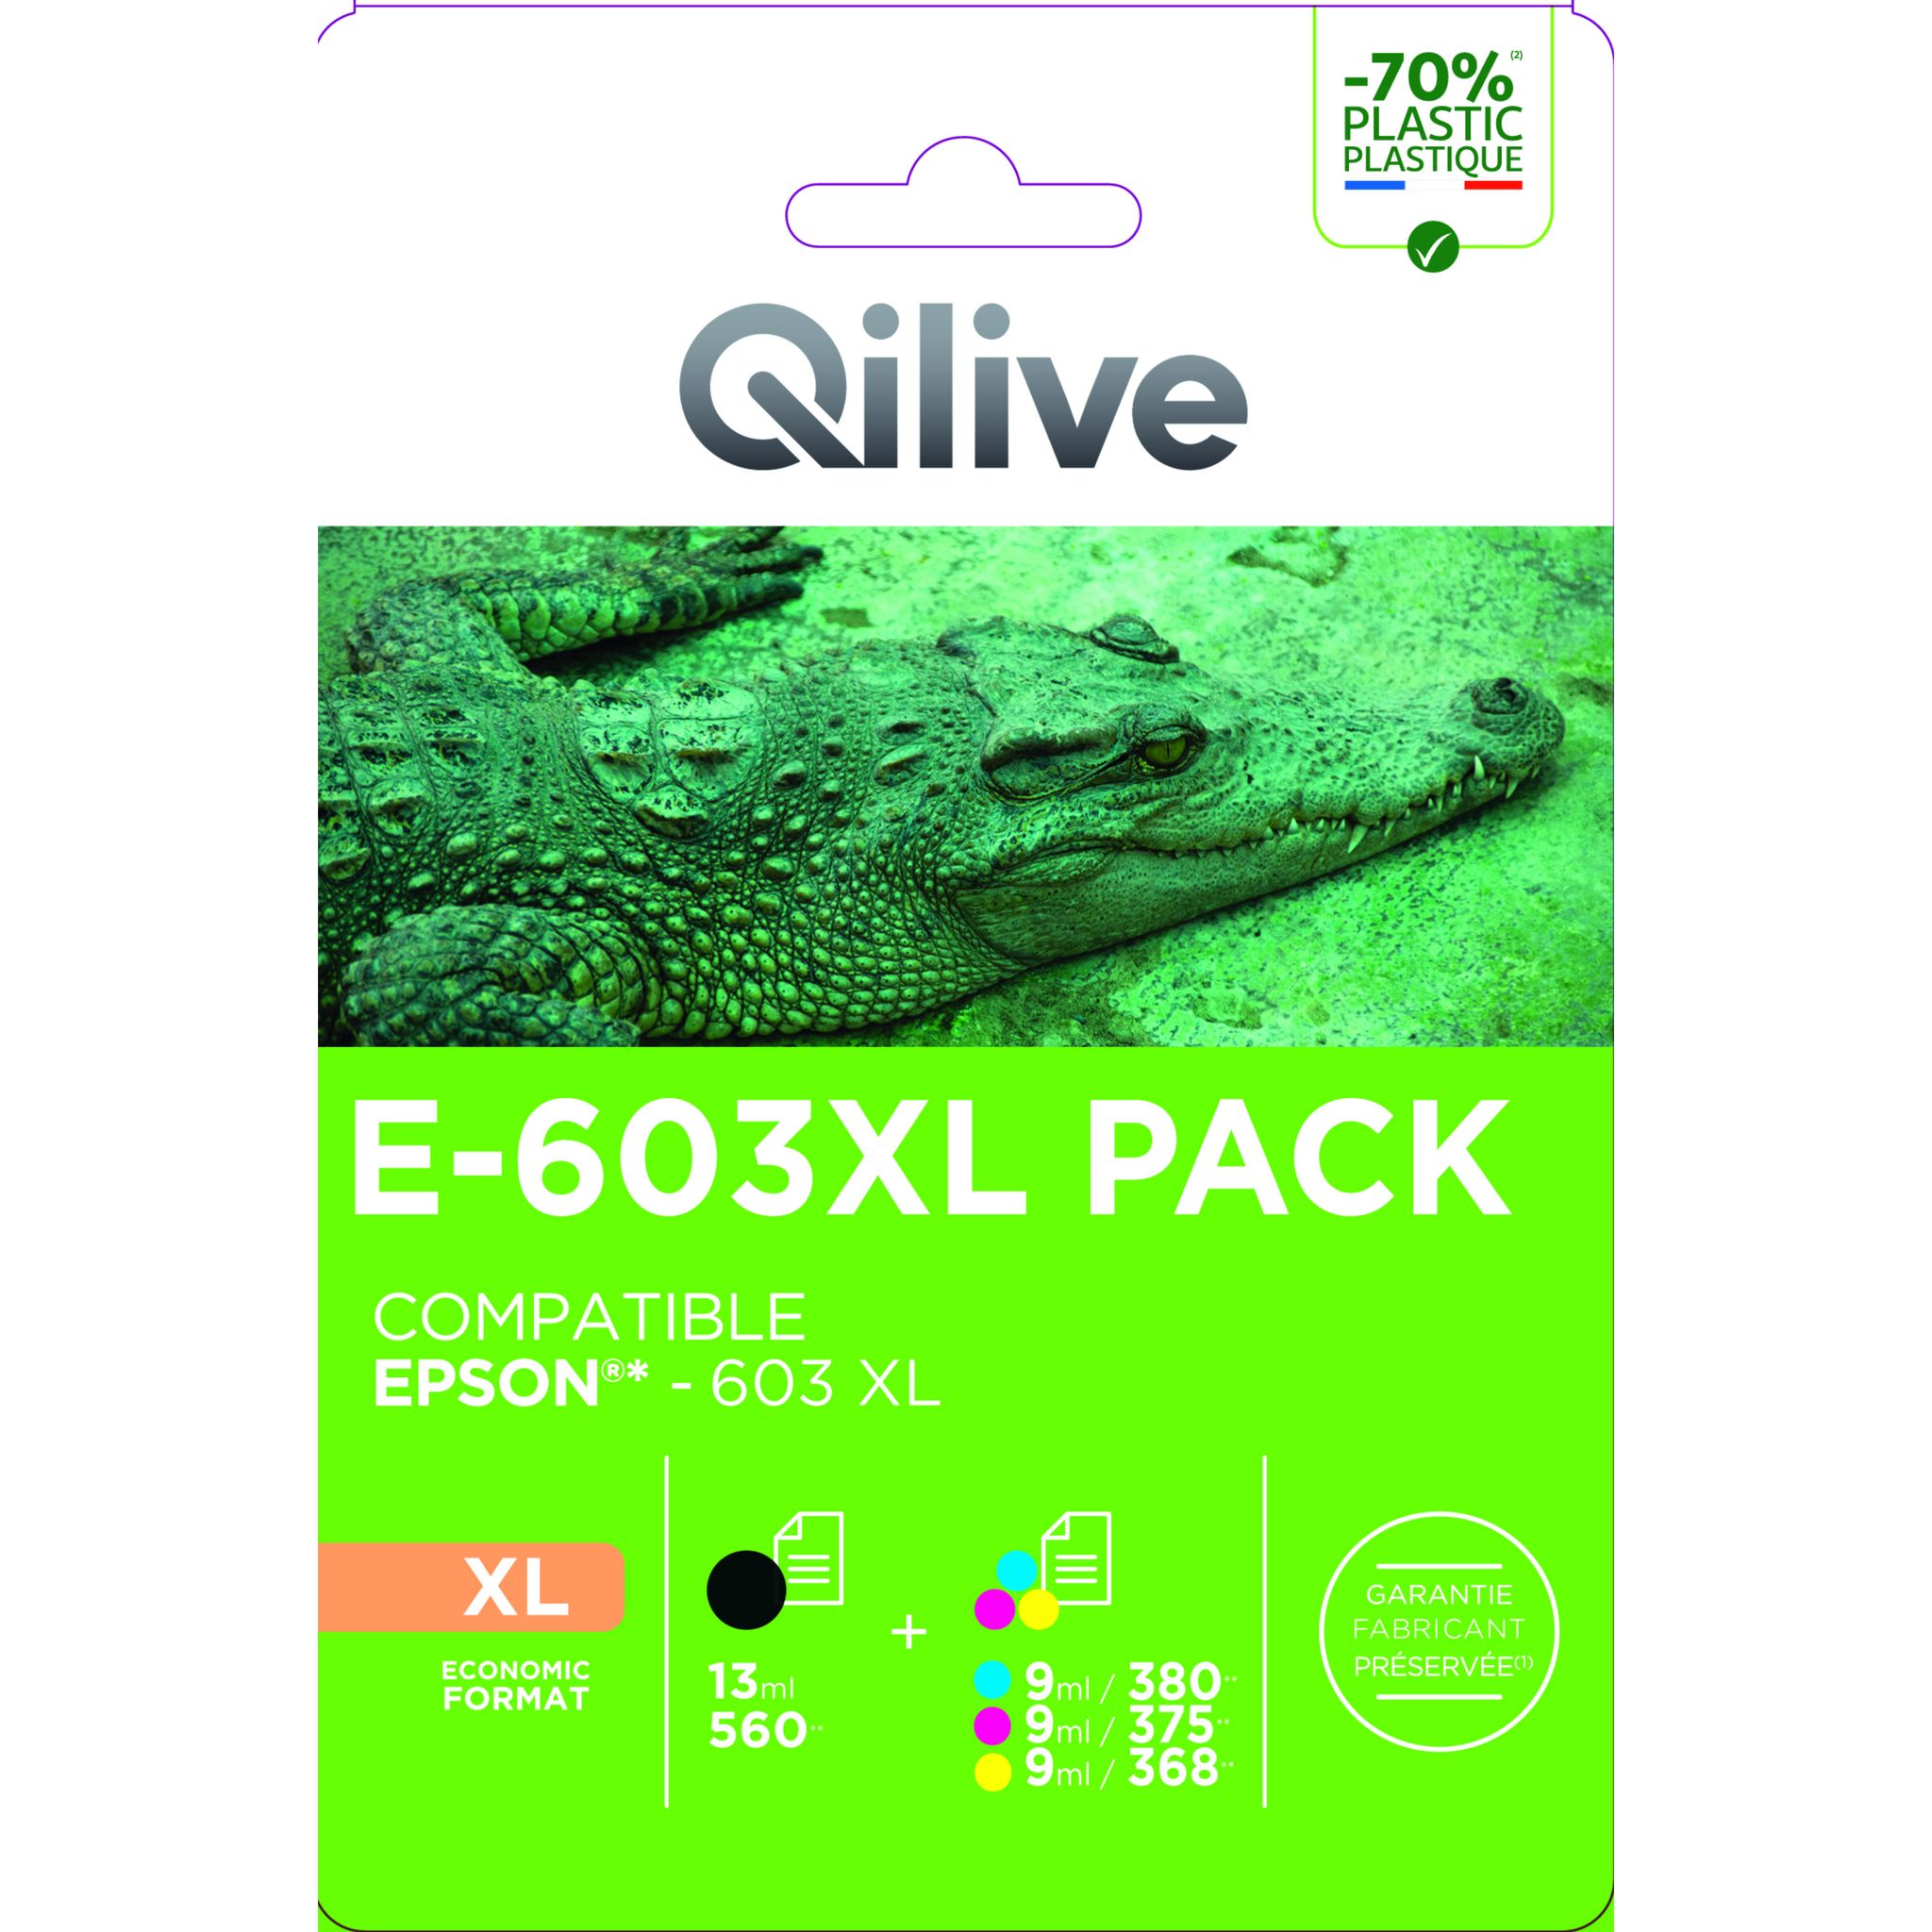 QILIVE Cartouche imprimante E-603 XL Pack 4 couleurs pas cher 